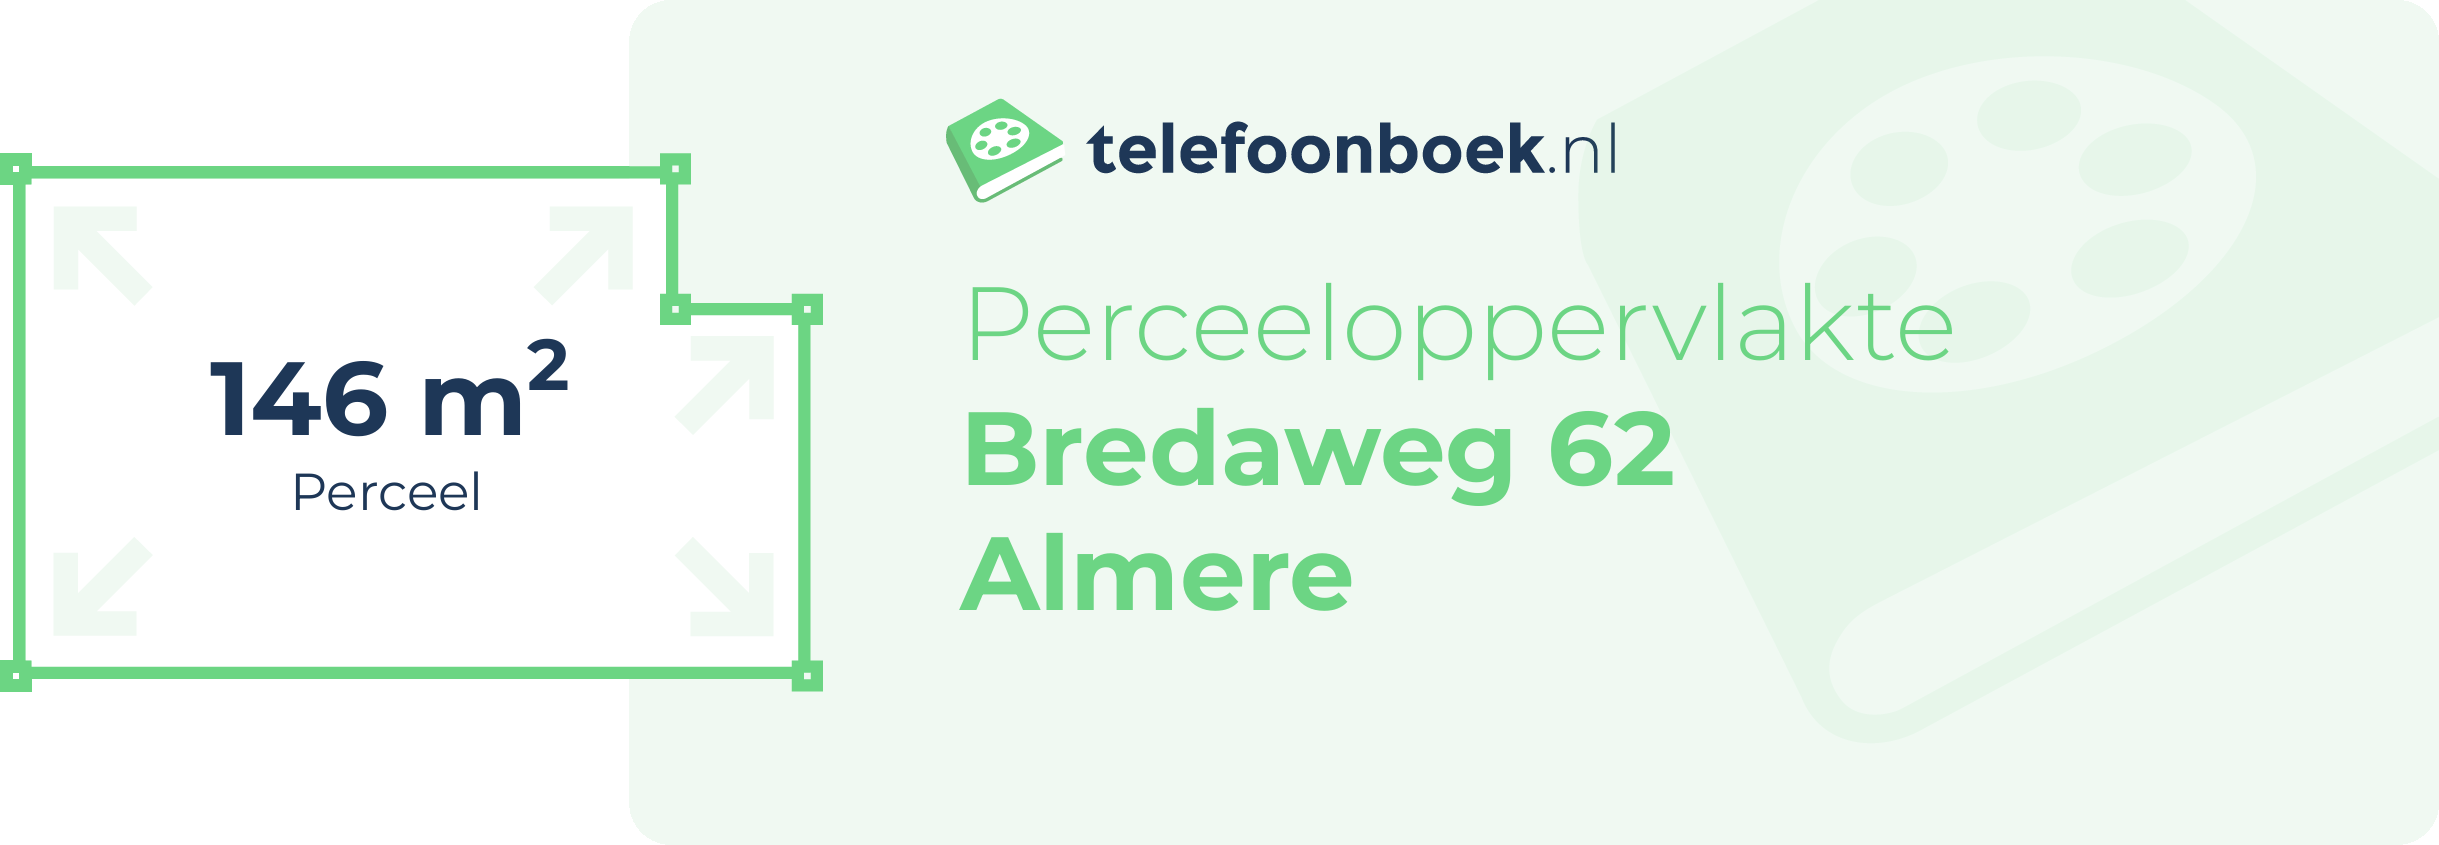 Perceeloppervlakte Bredaweg 62 Almere